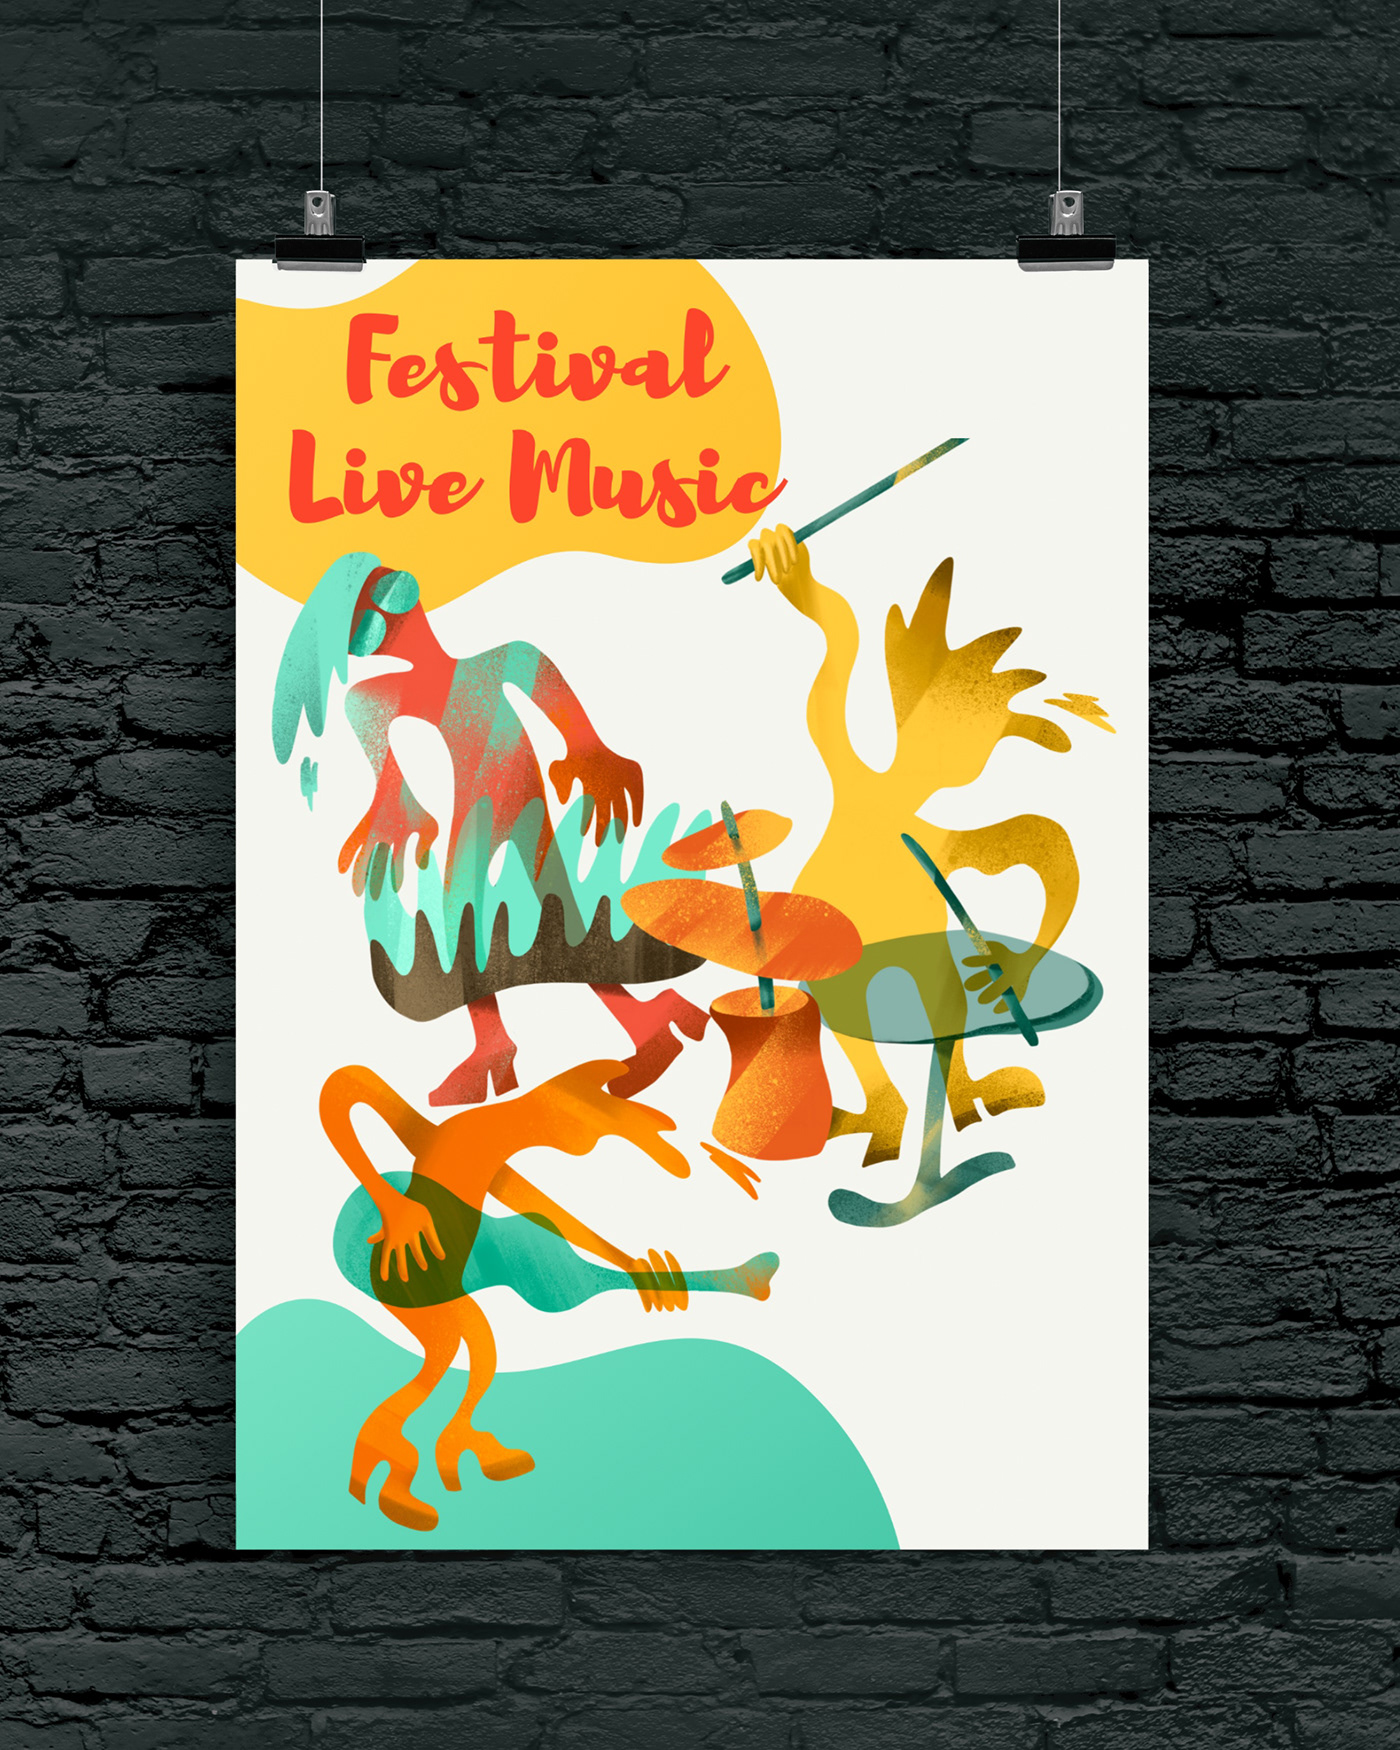 ILLUSTRATION  live music music Music Festival Music illustration music poster play music poster Poster Design